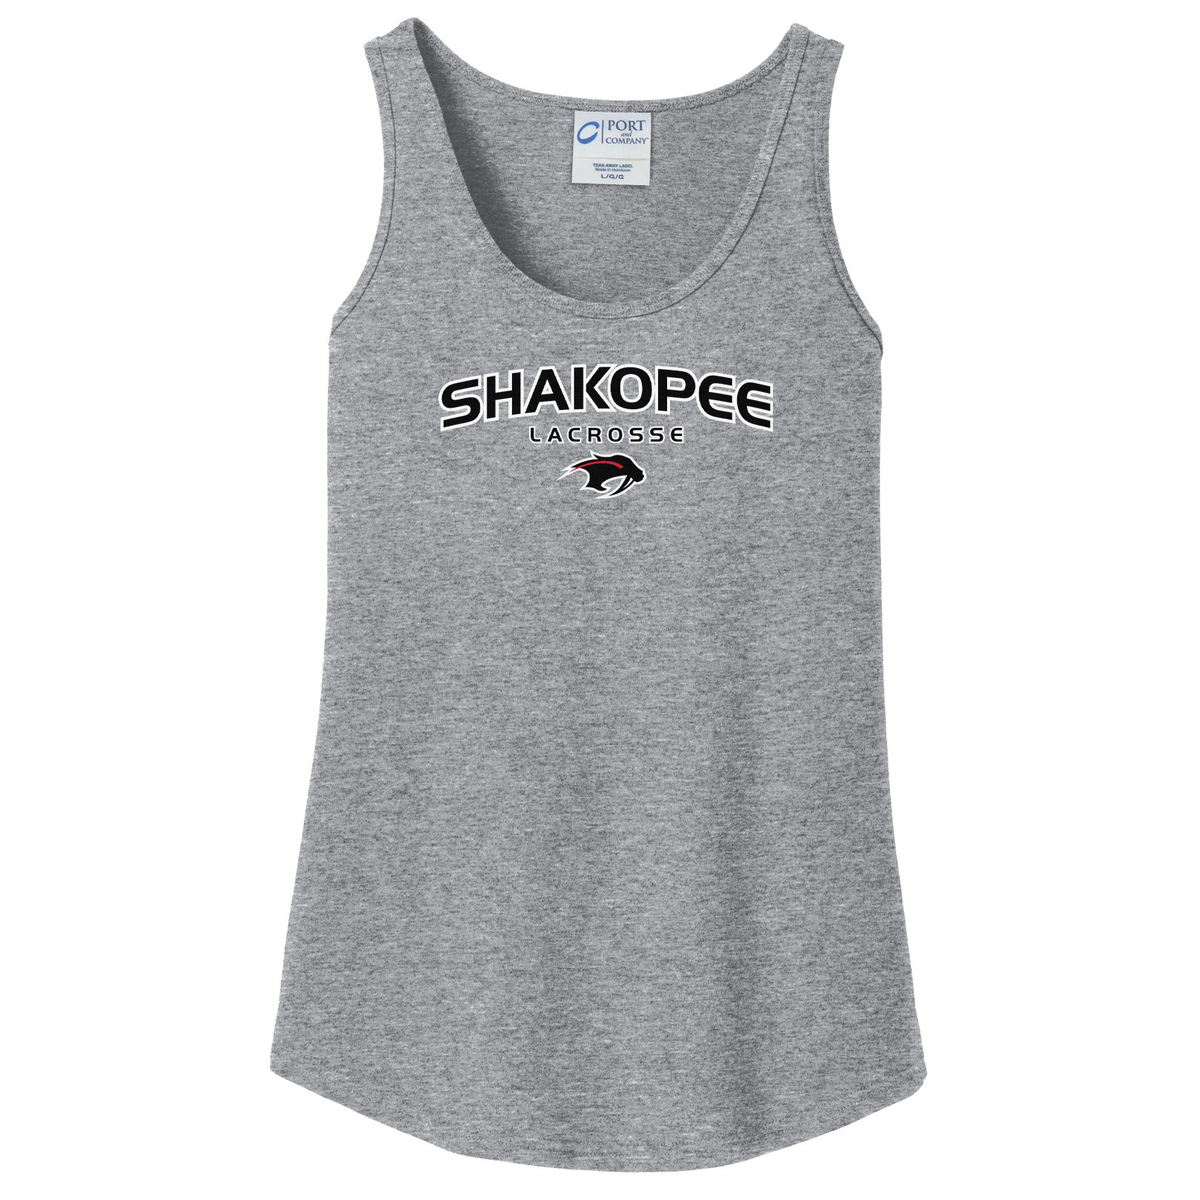 Shakopee Lacrosse Women's Tank Top